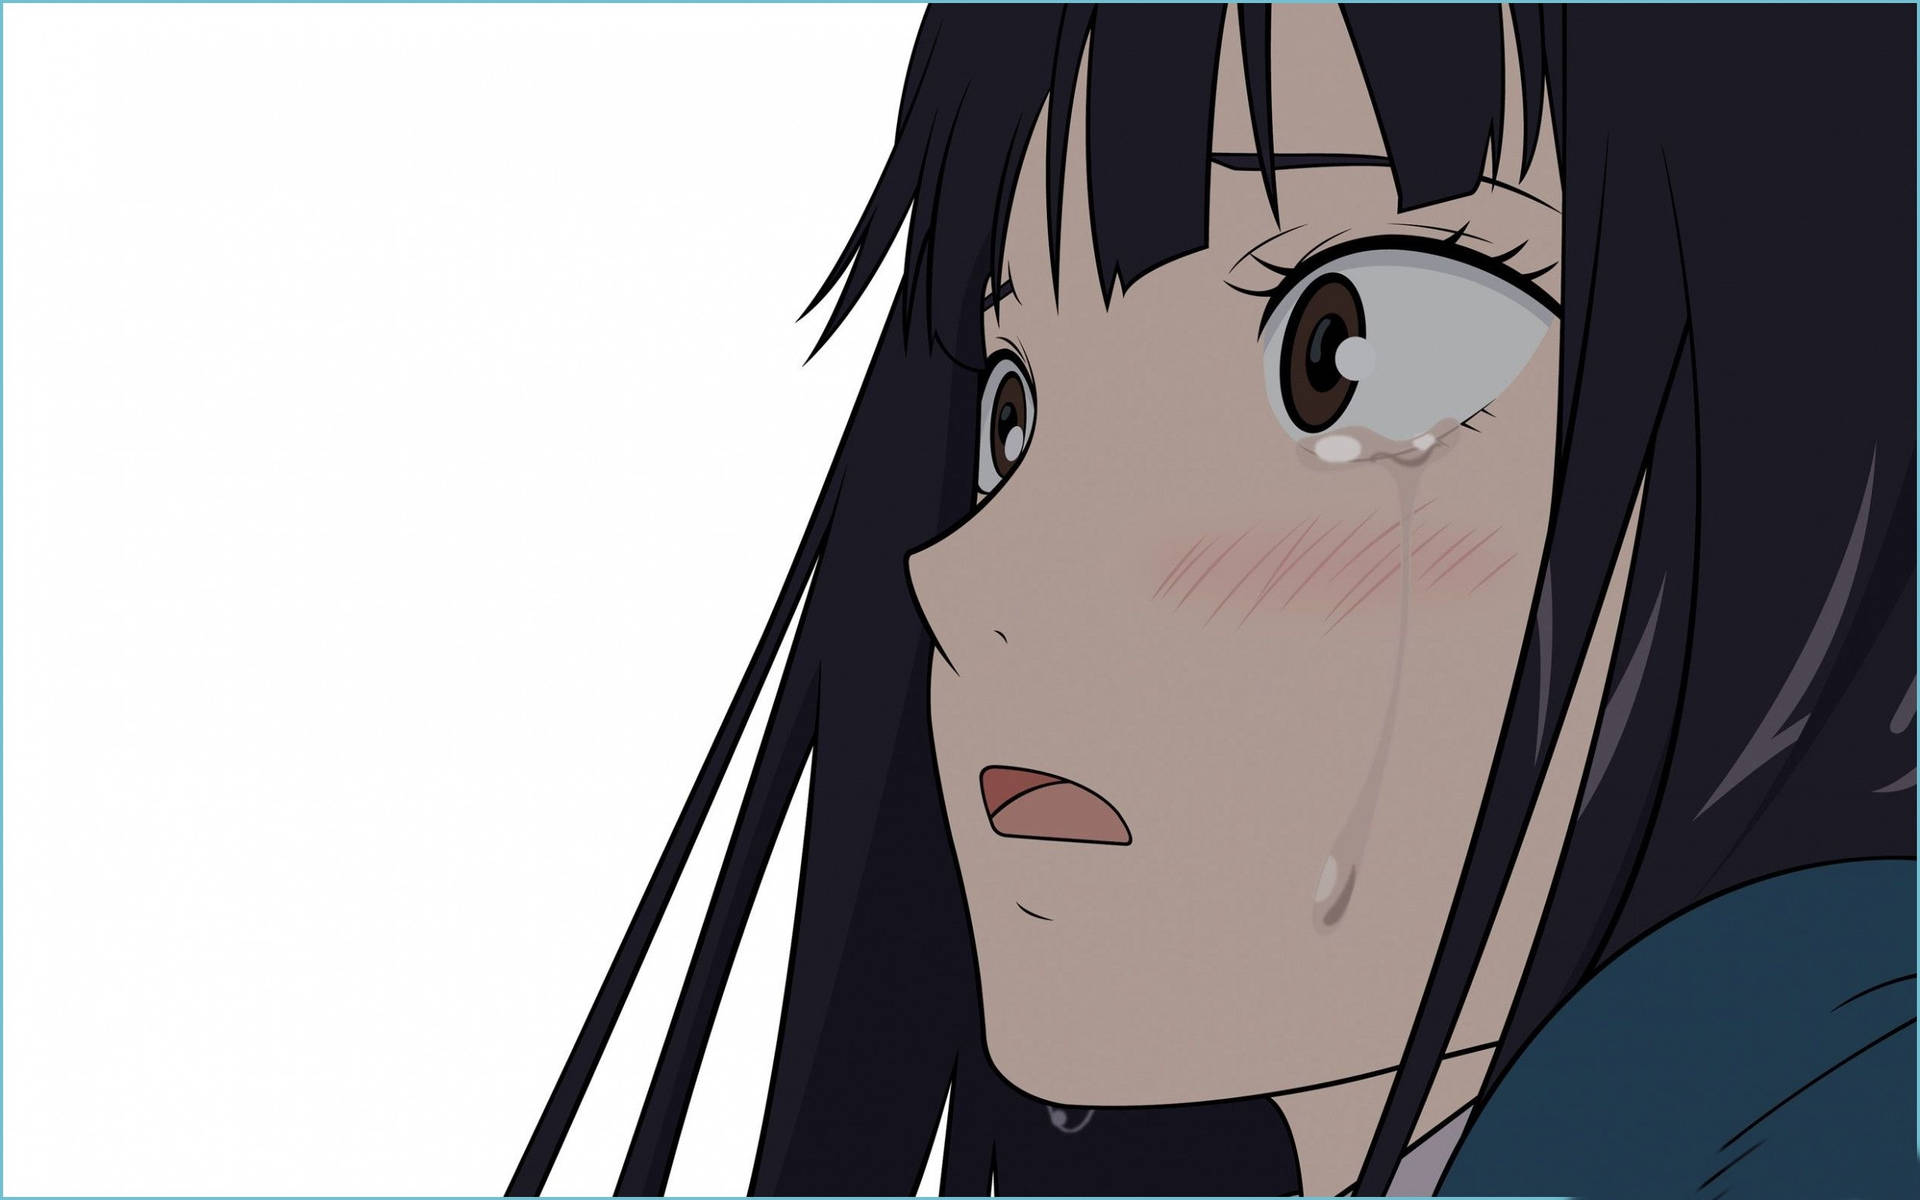 Blushing Depressed Anime Girl